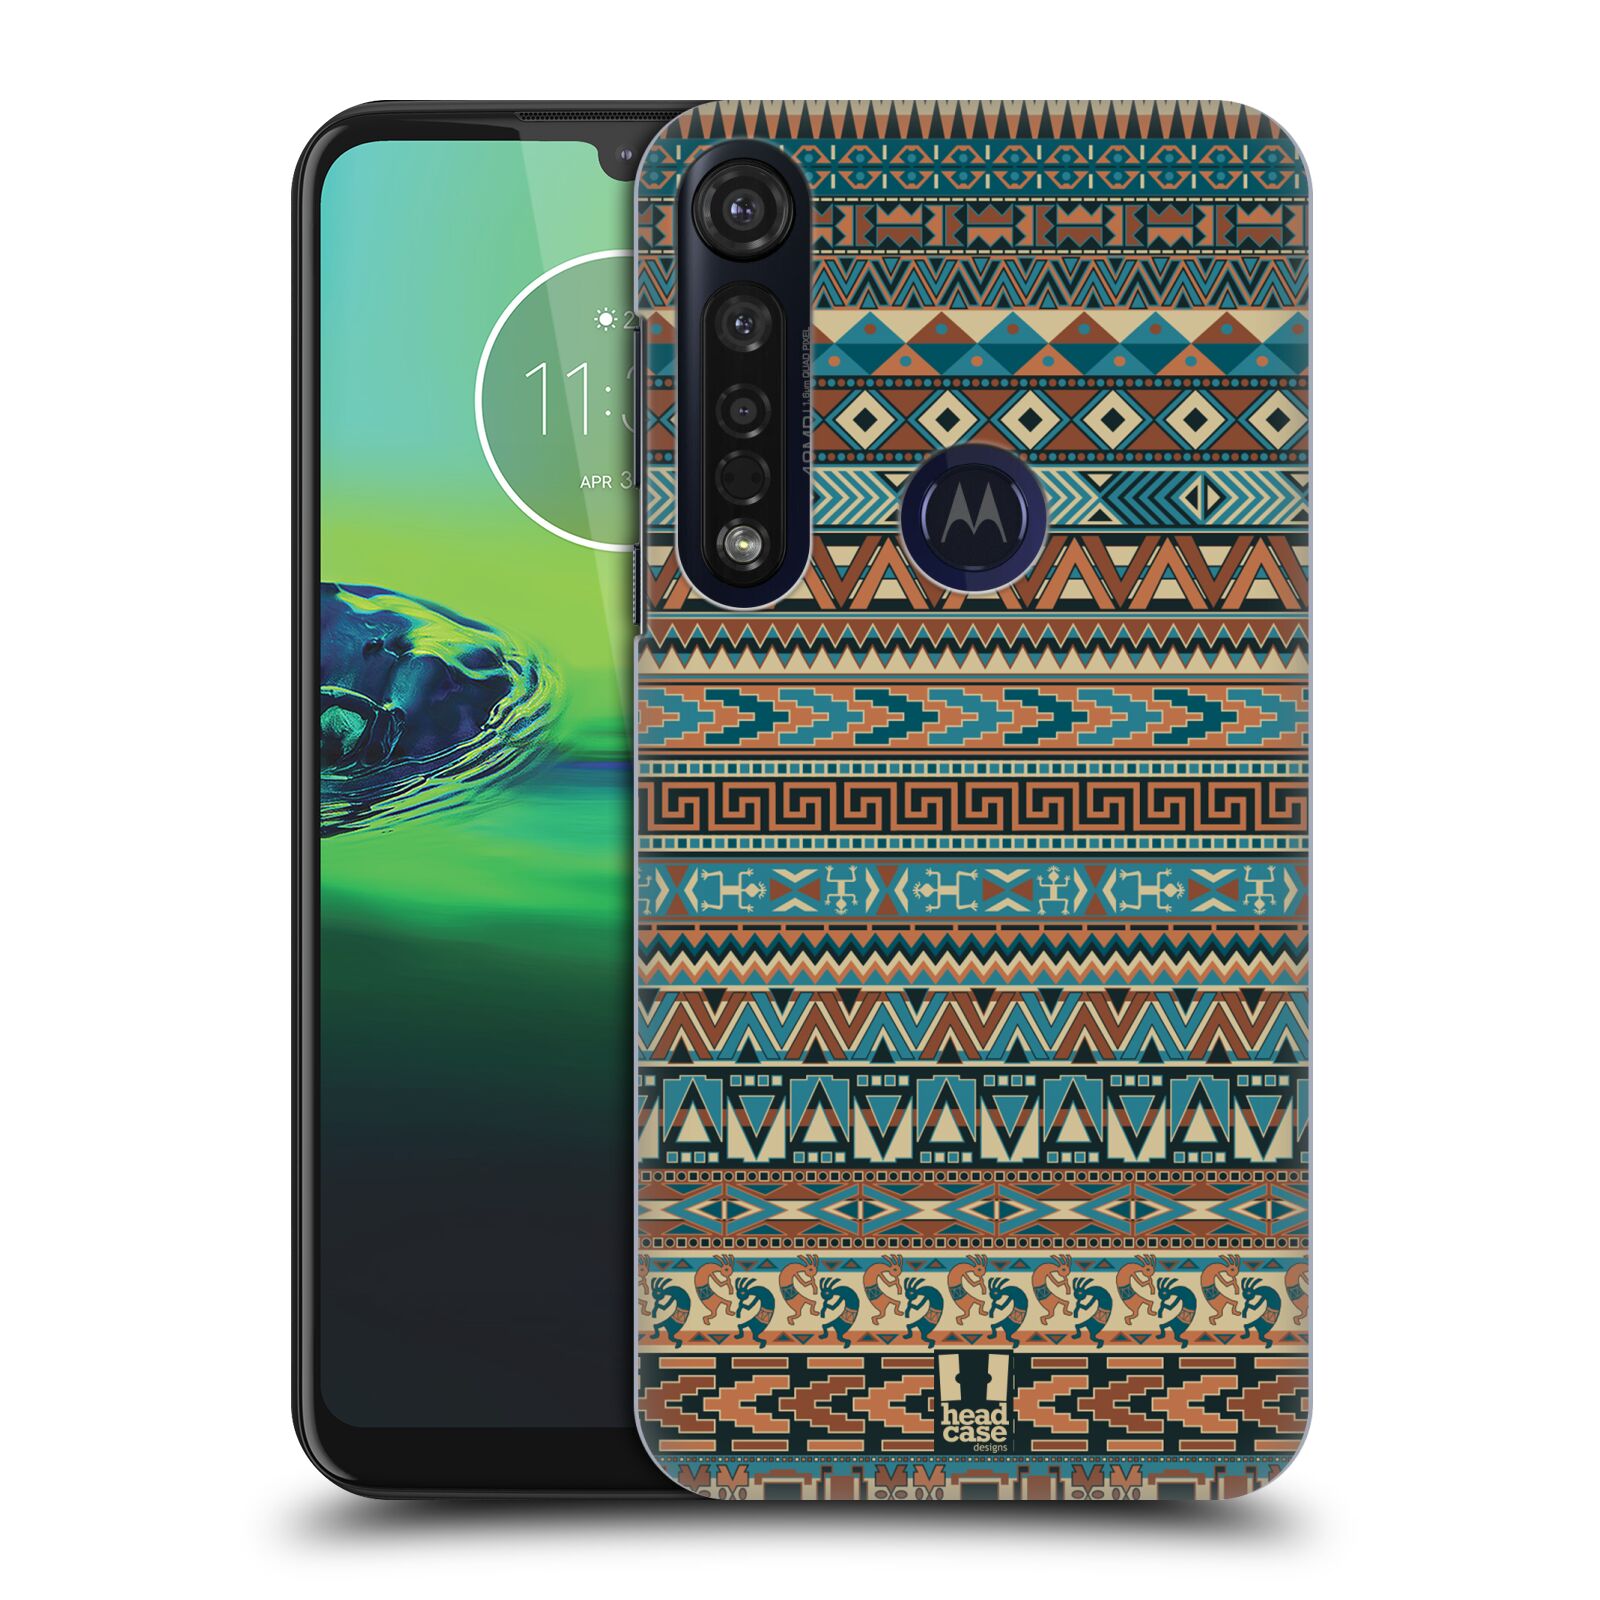 Pouzdro na mobil Motorola Moto G8 PLUS - HEAD CASE - vzor Indiánský vzor MODRÁ